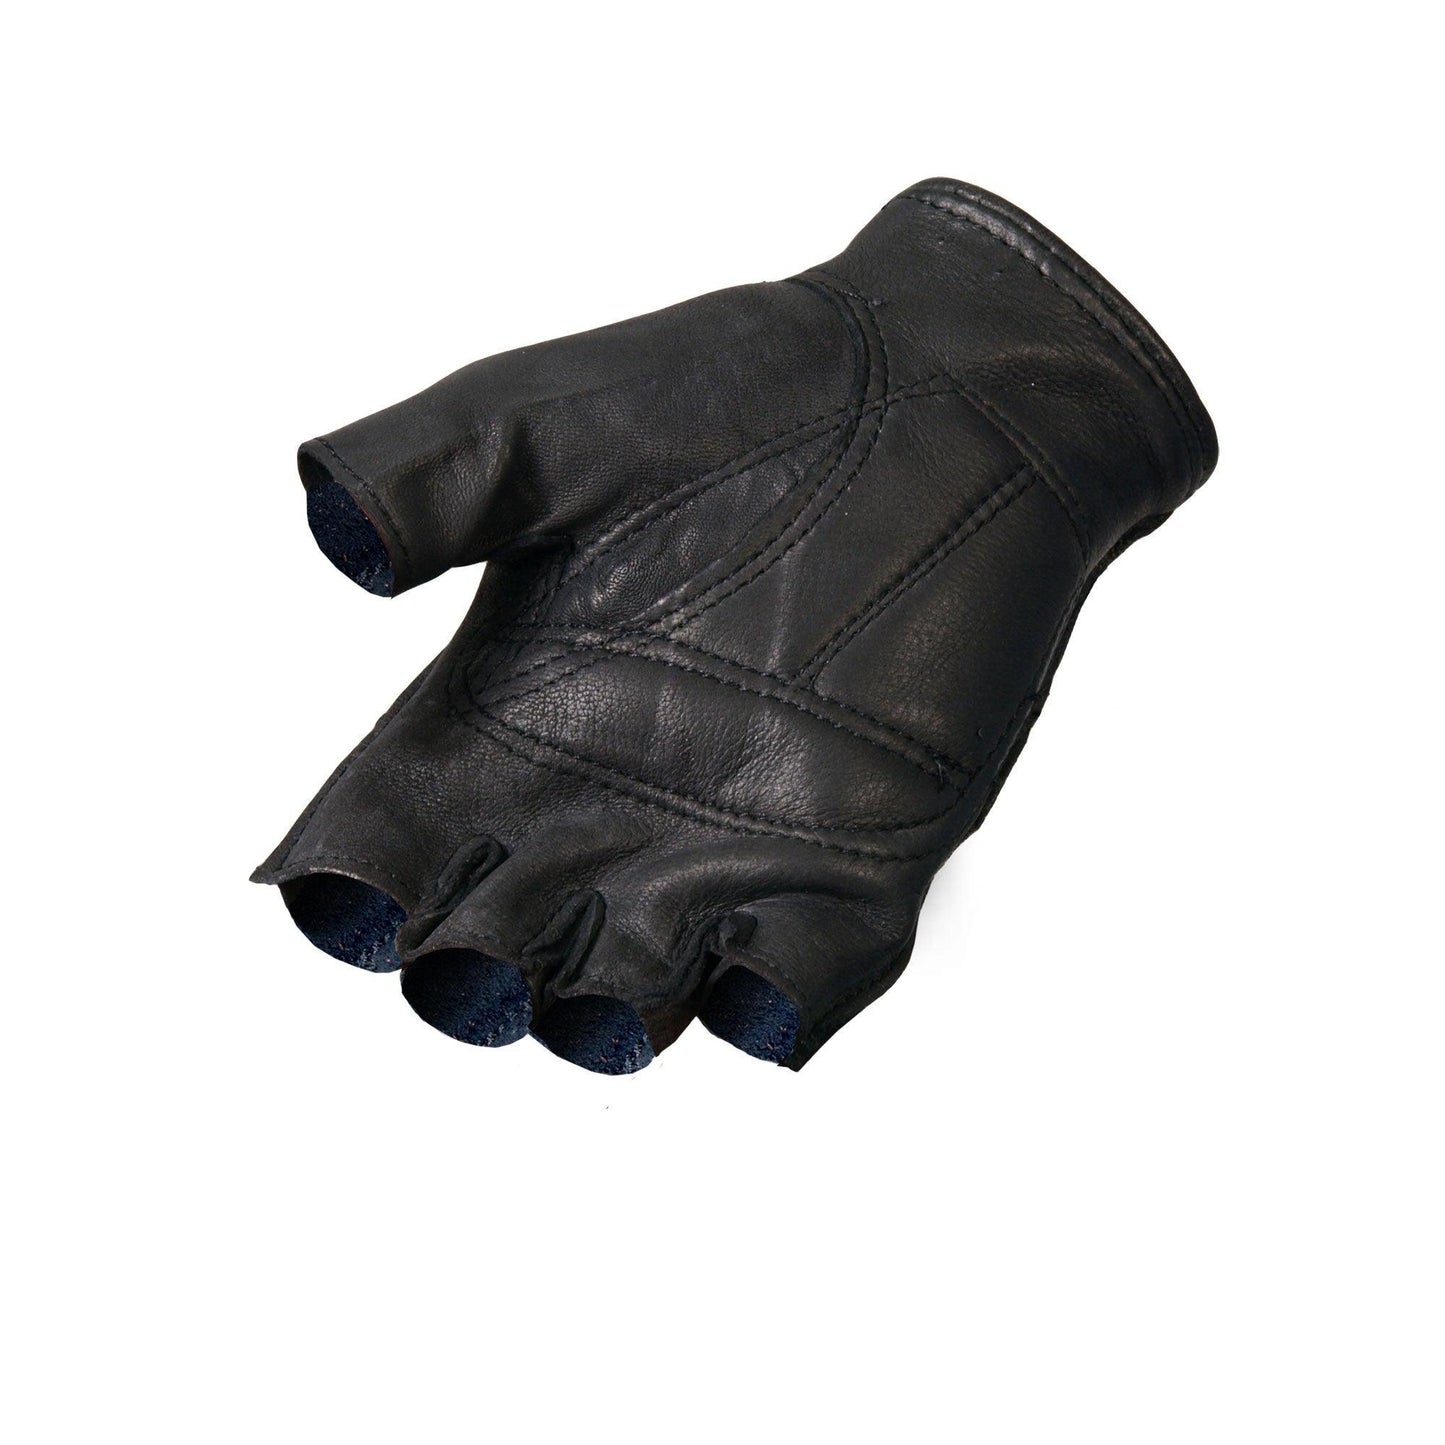 Deerskin Fingerless Motorcycle Gloves - Military Republic